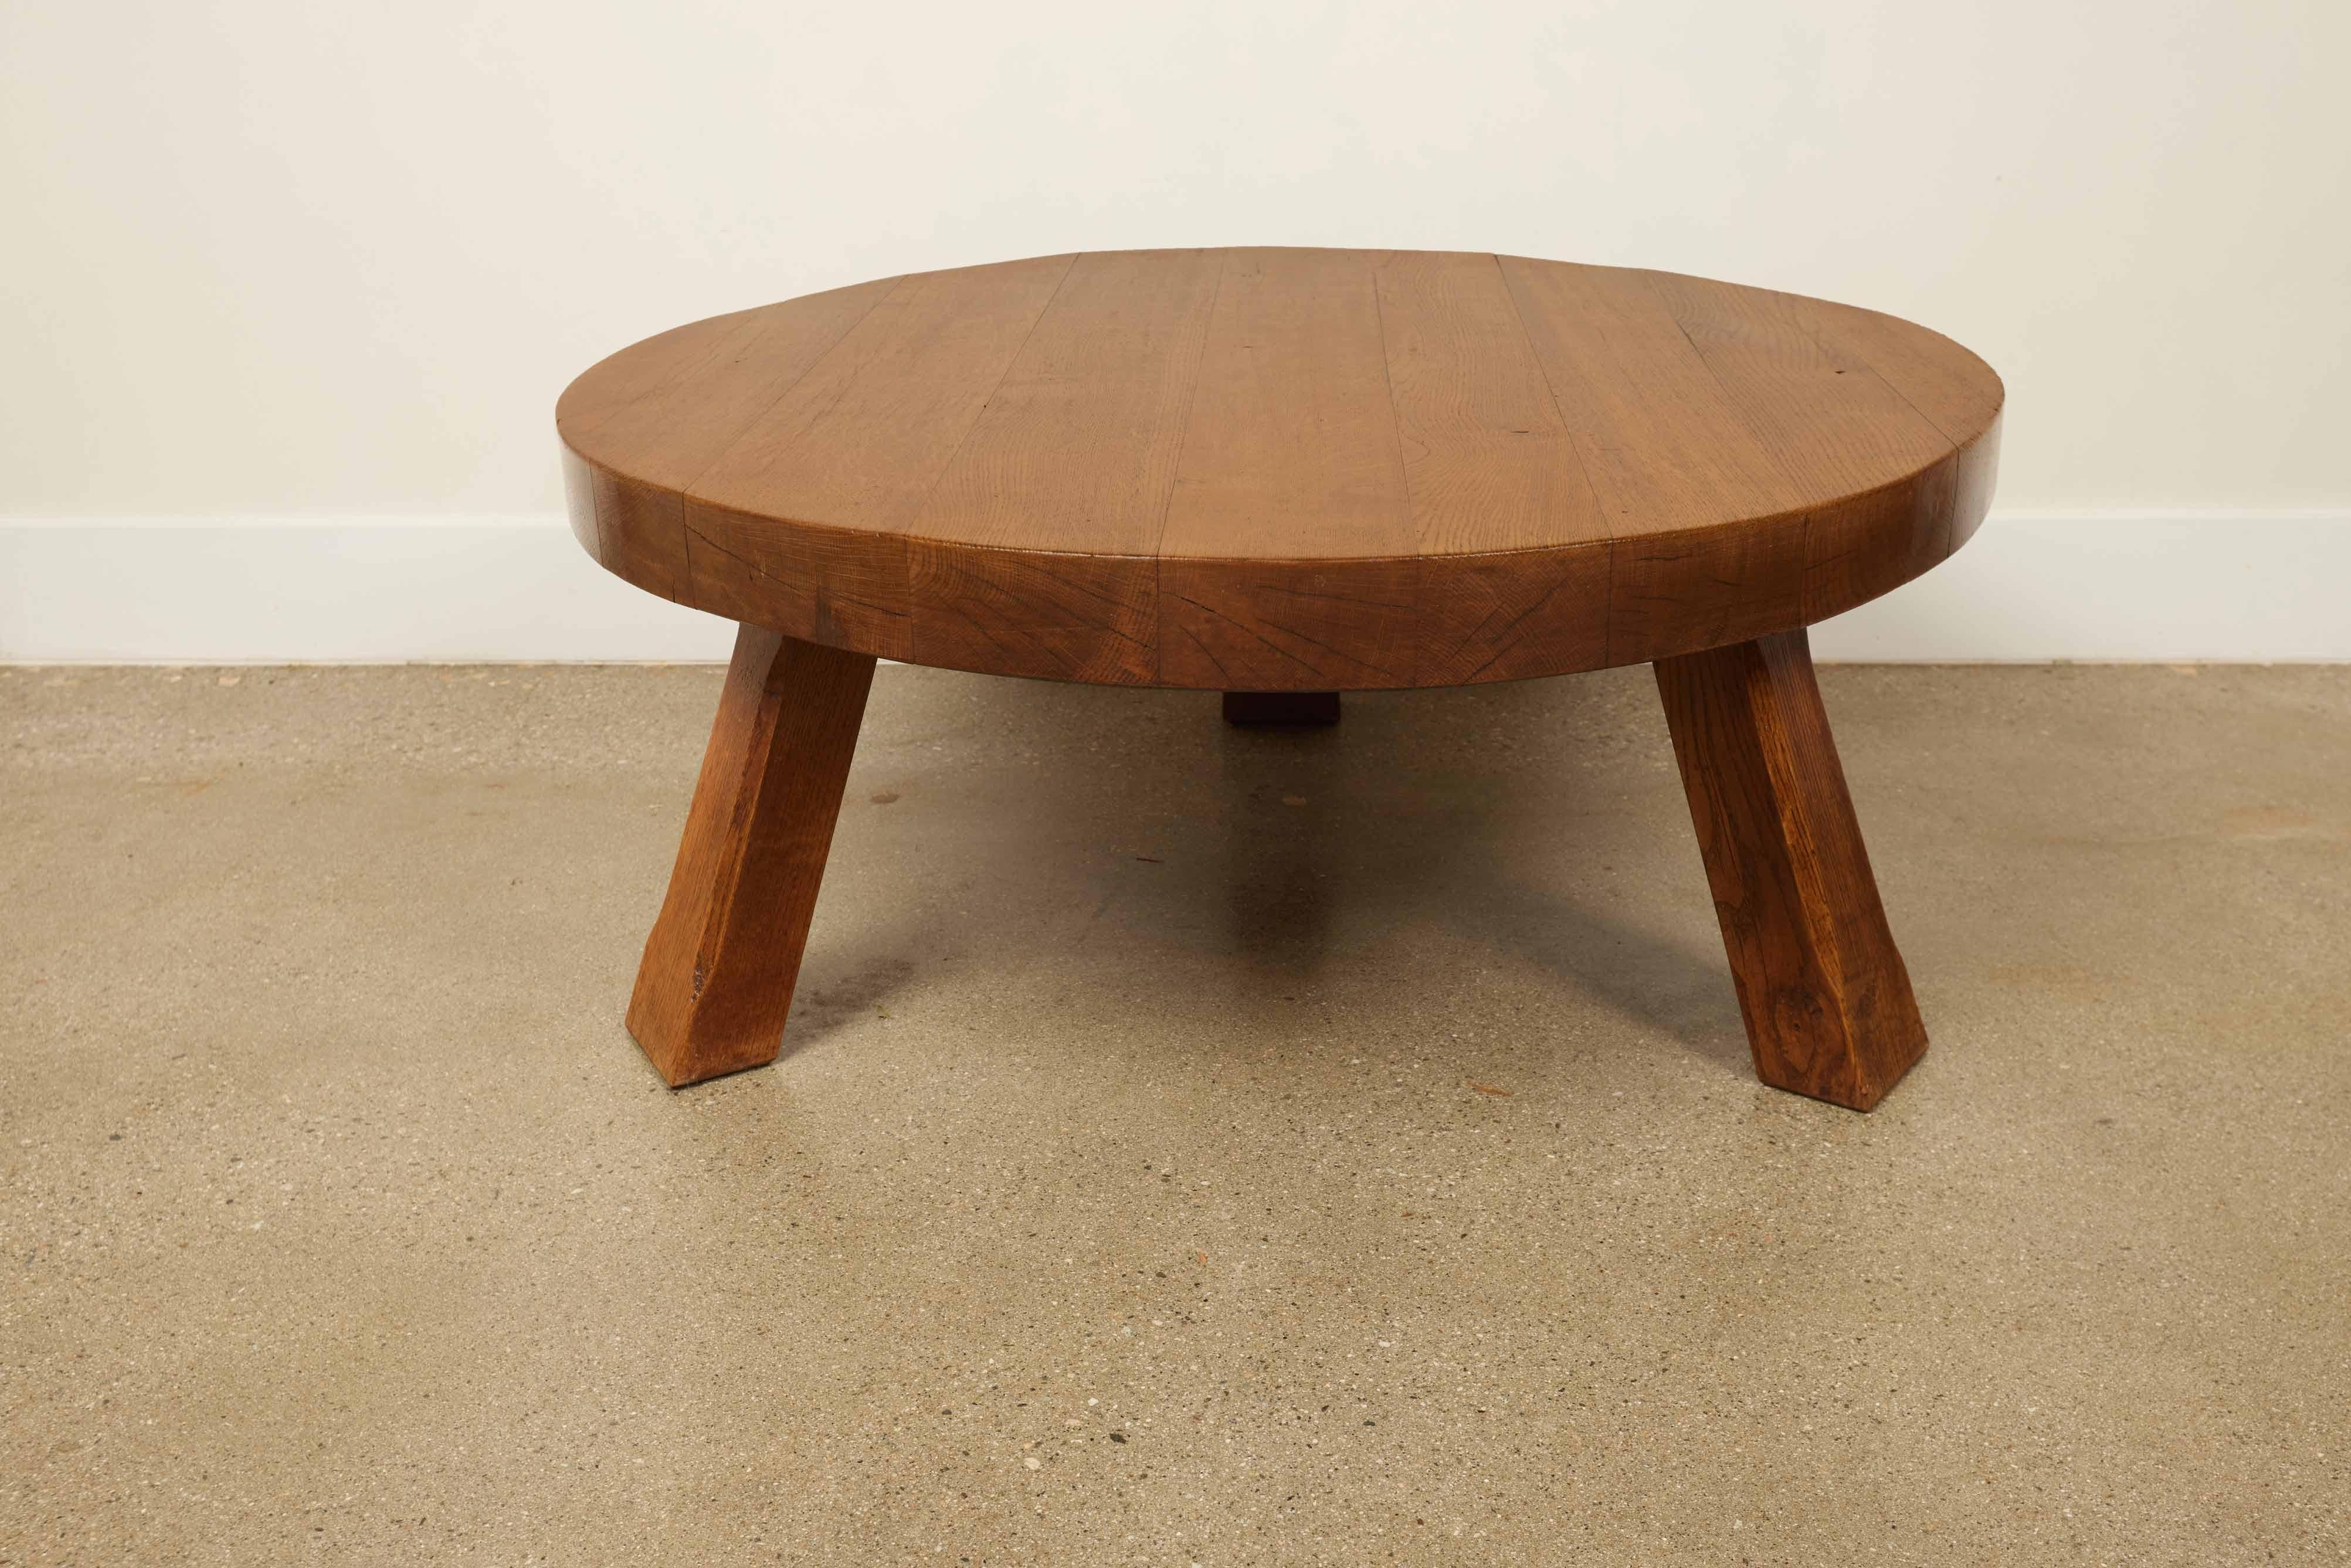 Großer brutalistischer Couchtisch aus Eiche, Mid Century Modern 

Dieser Tisch stammt aus Belgien aus den fesselnden 1970er Jahren, einer Zeit, die für ihre kühnen und innovativen Designansätze bekannt ist. Er ist eine großartige Darstellung der